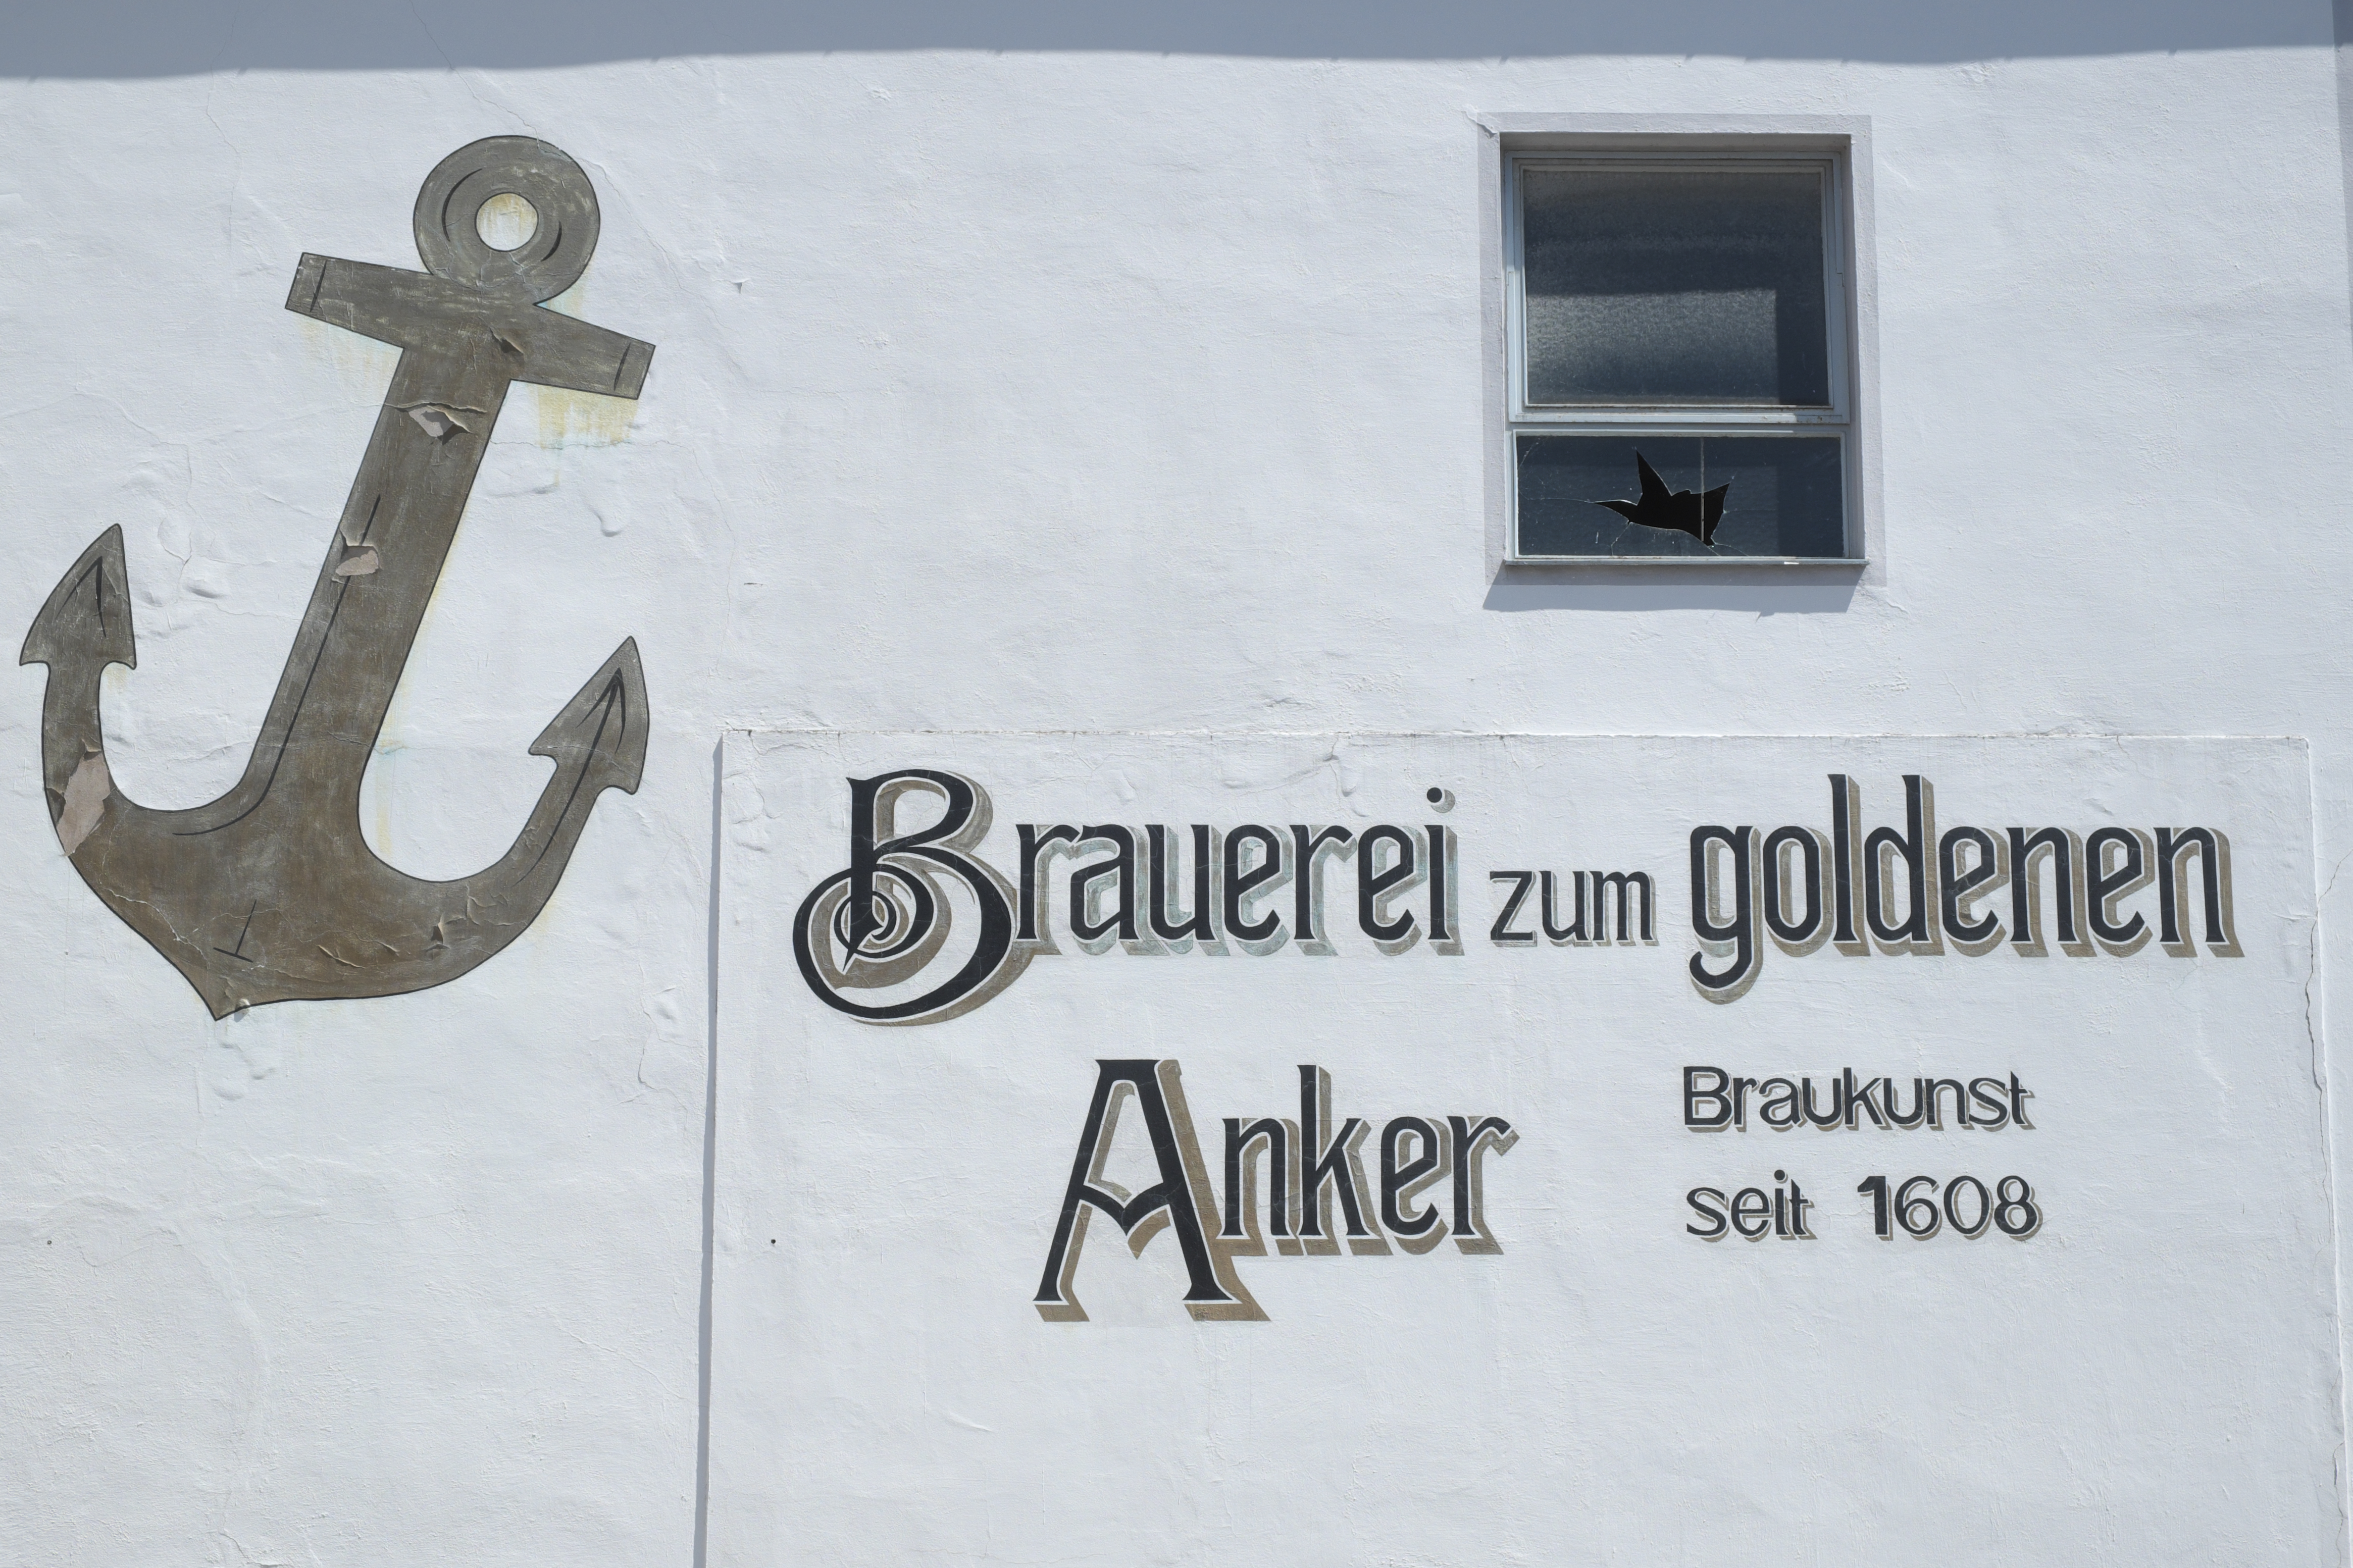 Ankergasse Brauerei zum Anker 443.jpg - Wikimedia